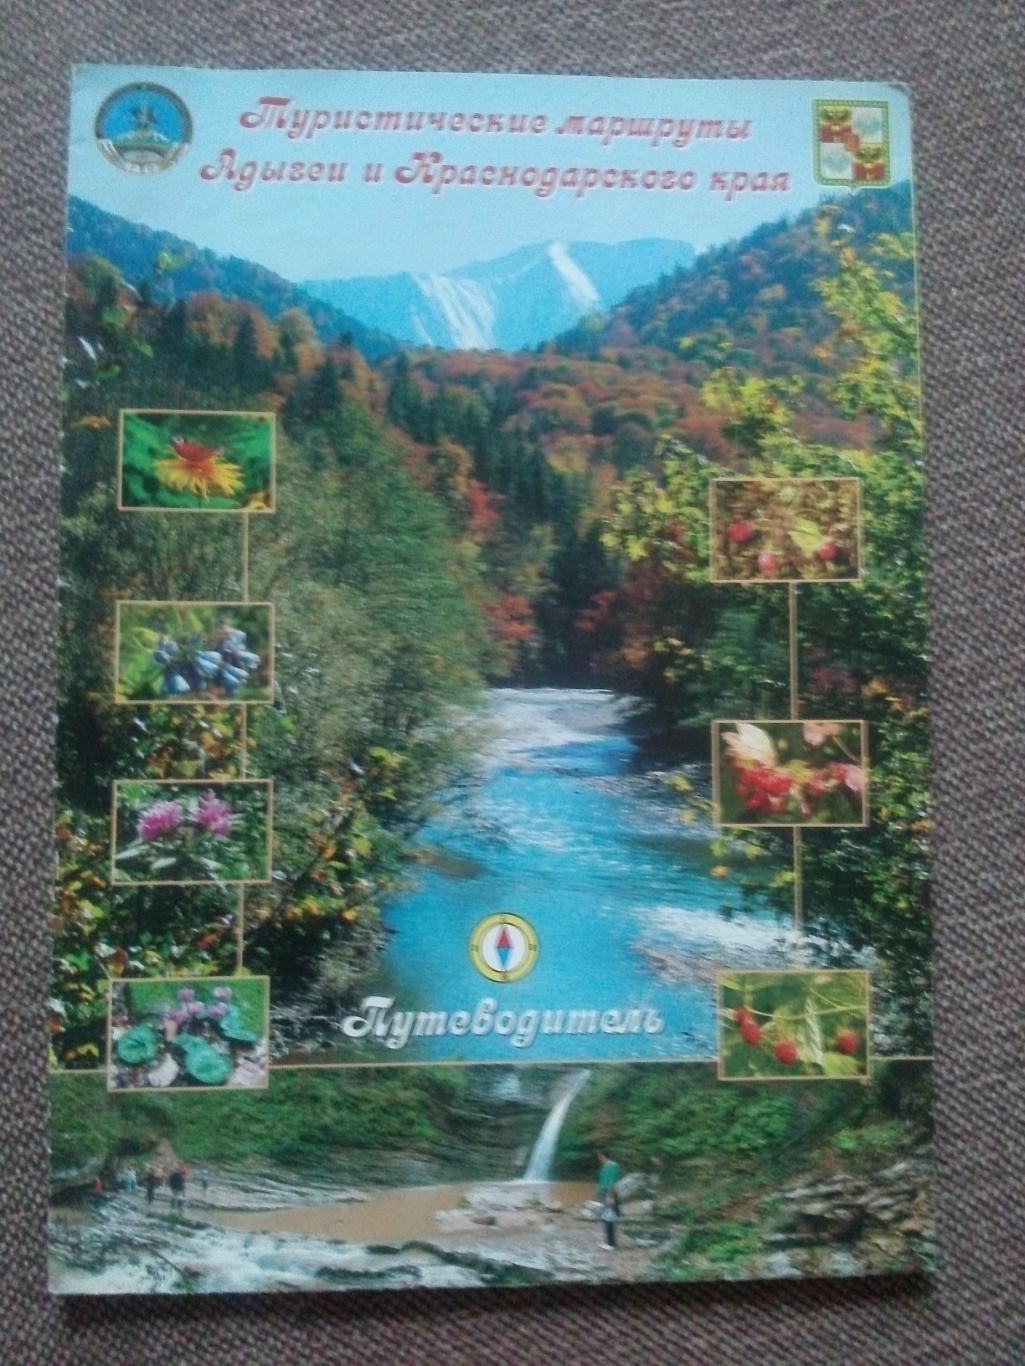 Путеводитель : Туристические маршруты Адыгеи и Краснодарского края 2000-е годы